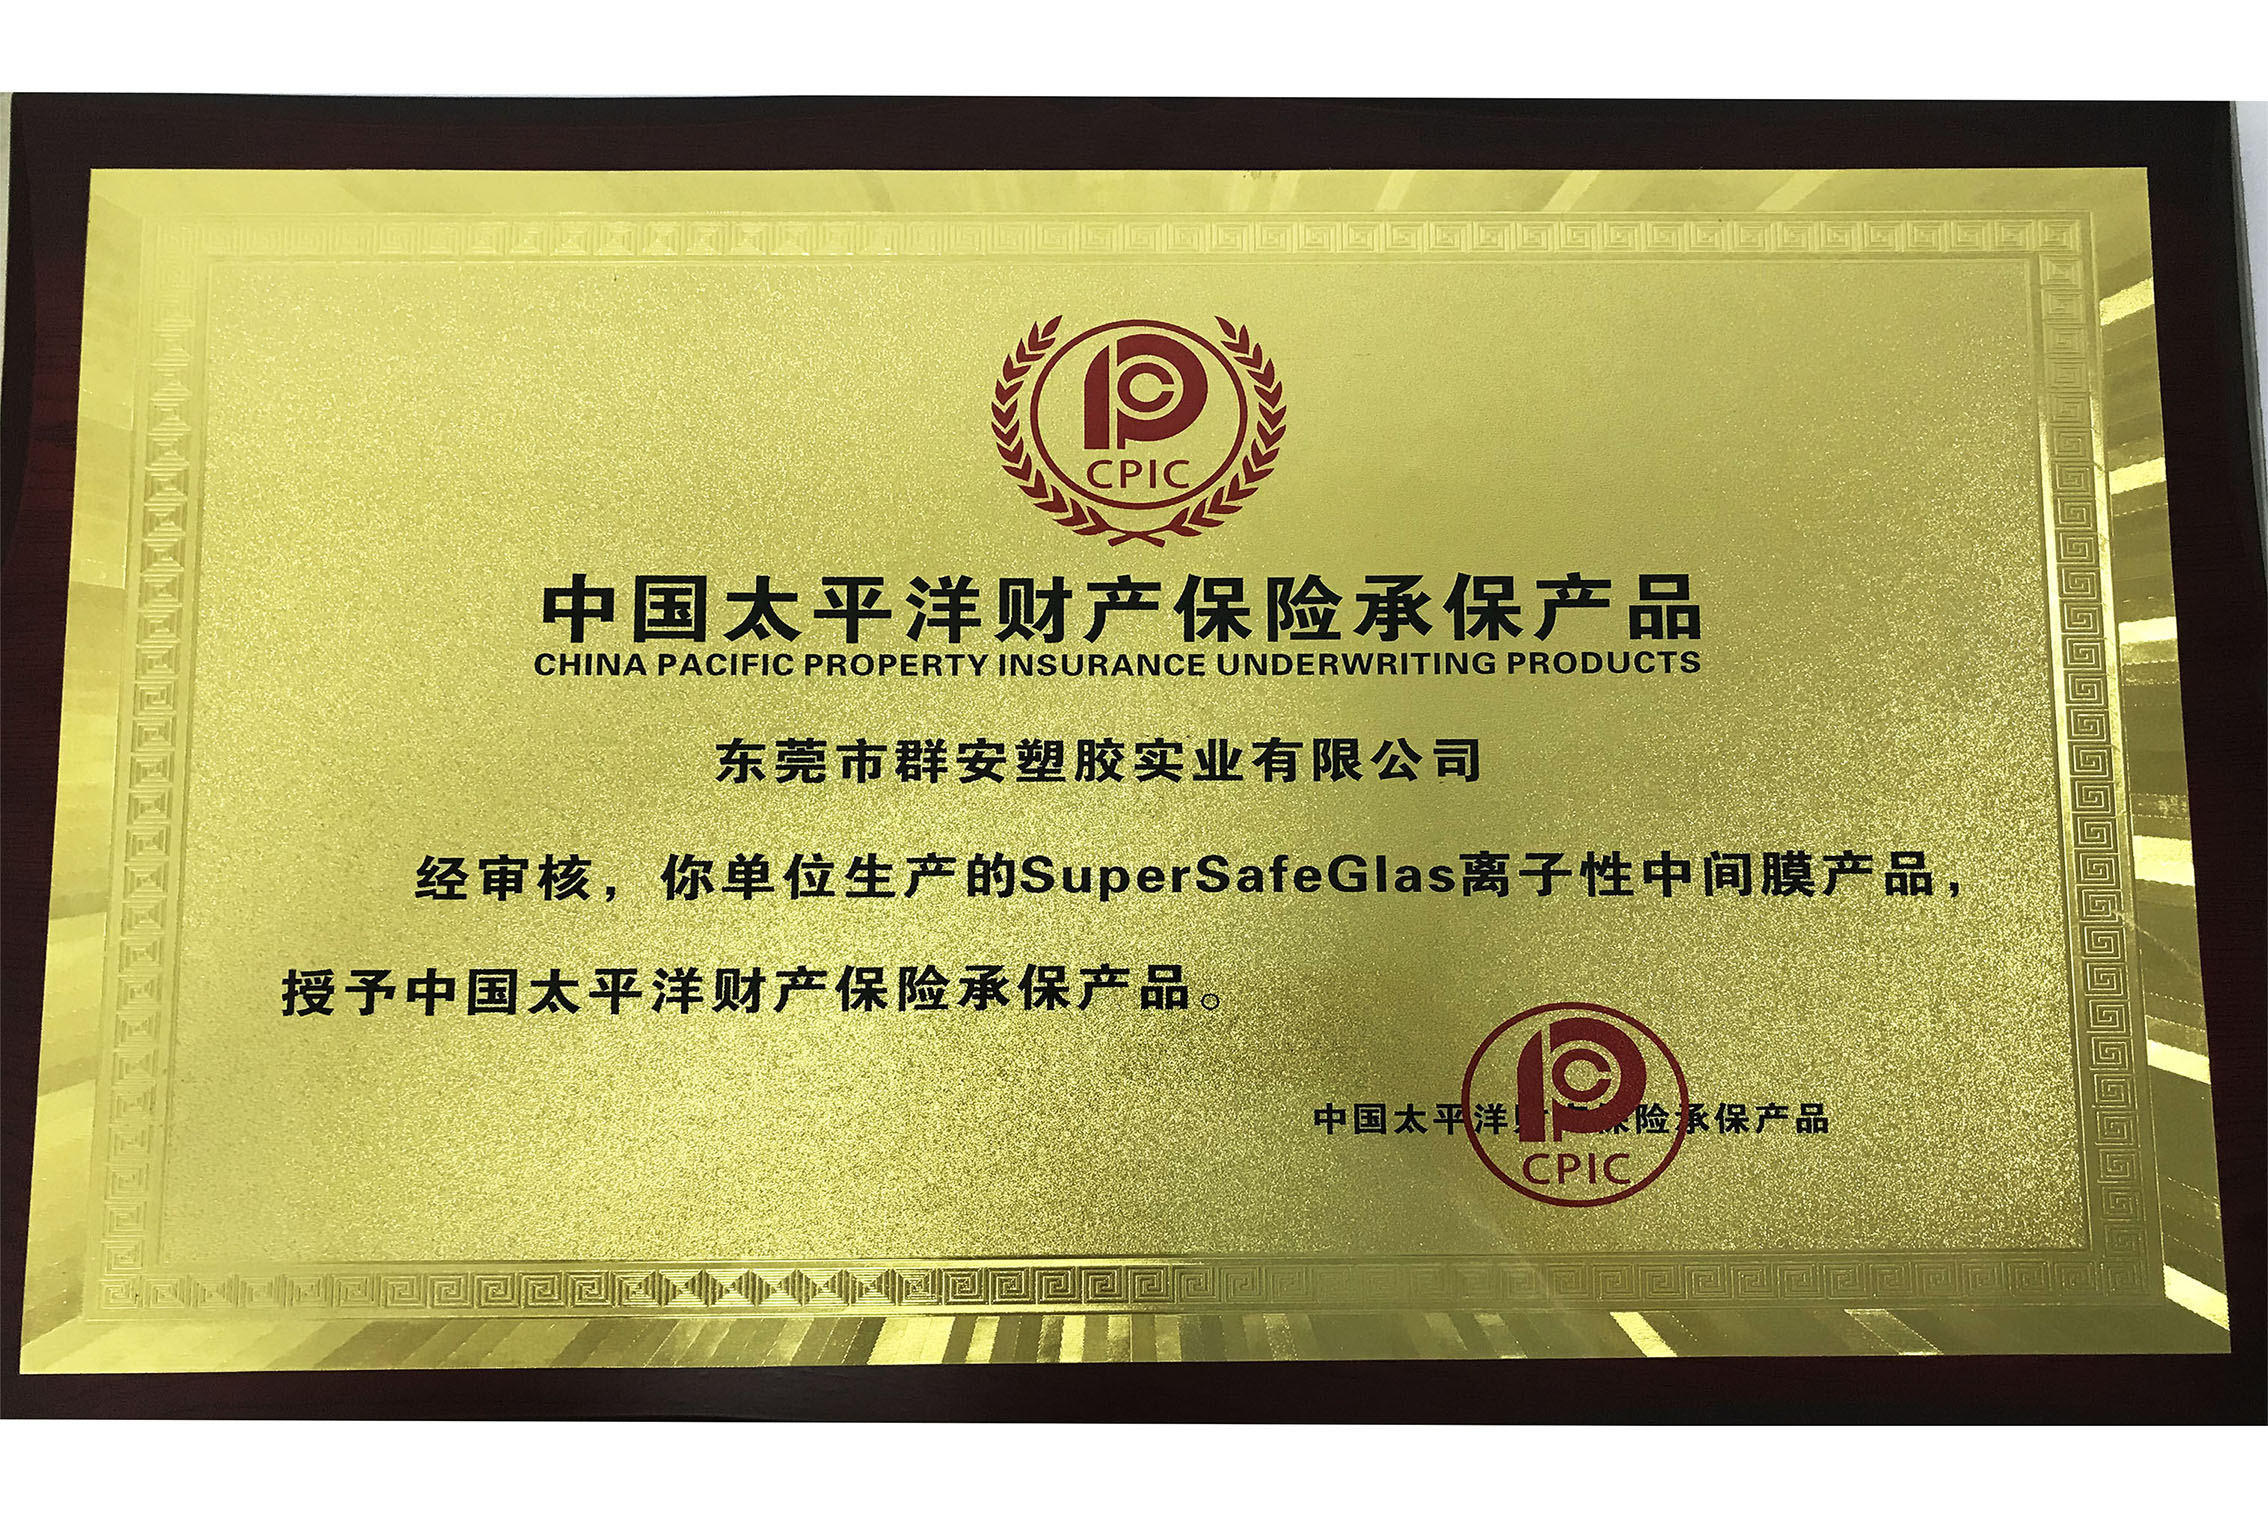 中国太平洋财产保险承保群安SuperSafeGlas离子性中间膜产品